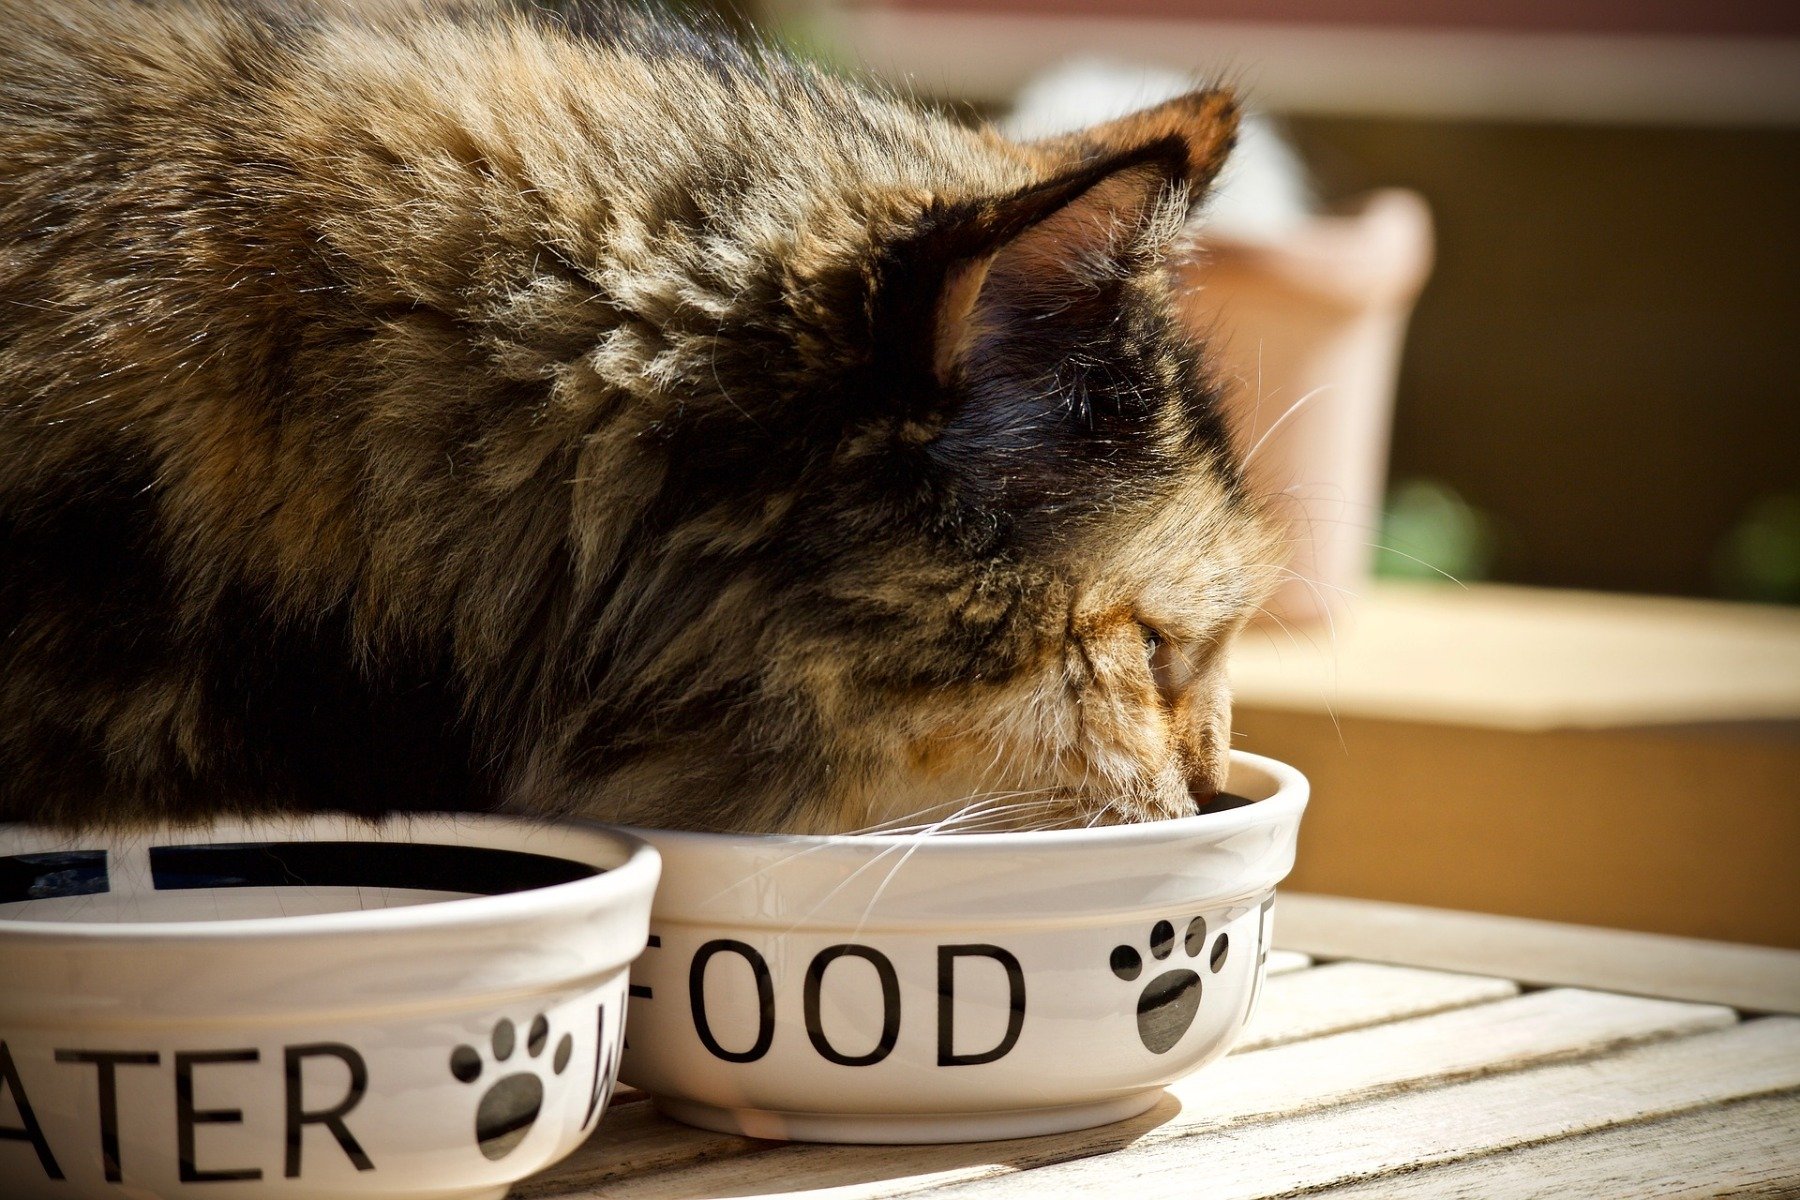 Ce chat est penché sur son bol de nourriture